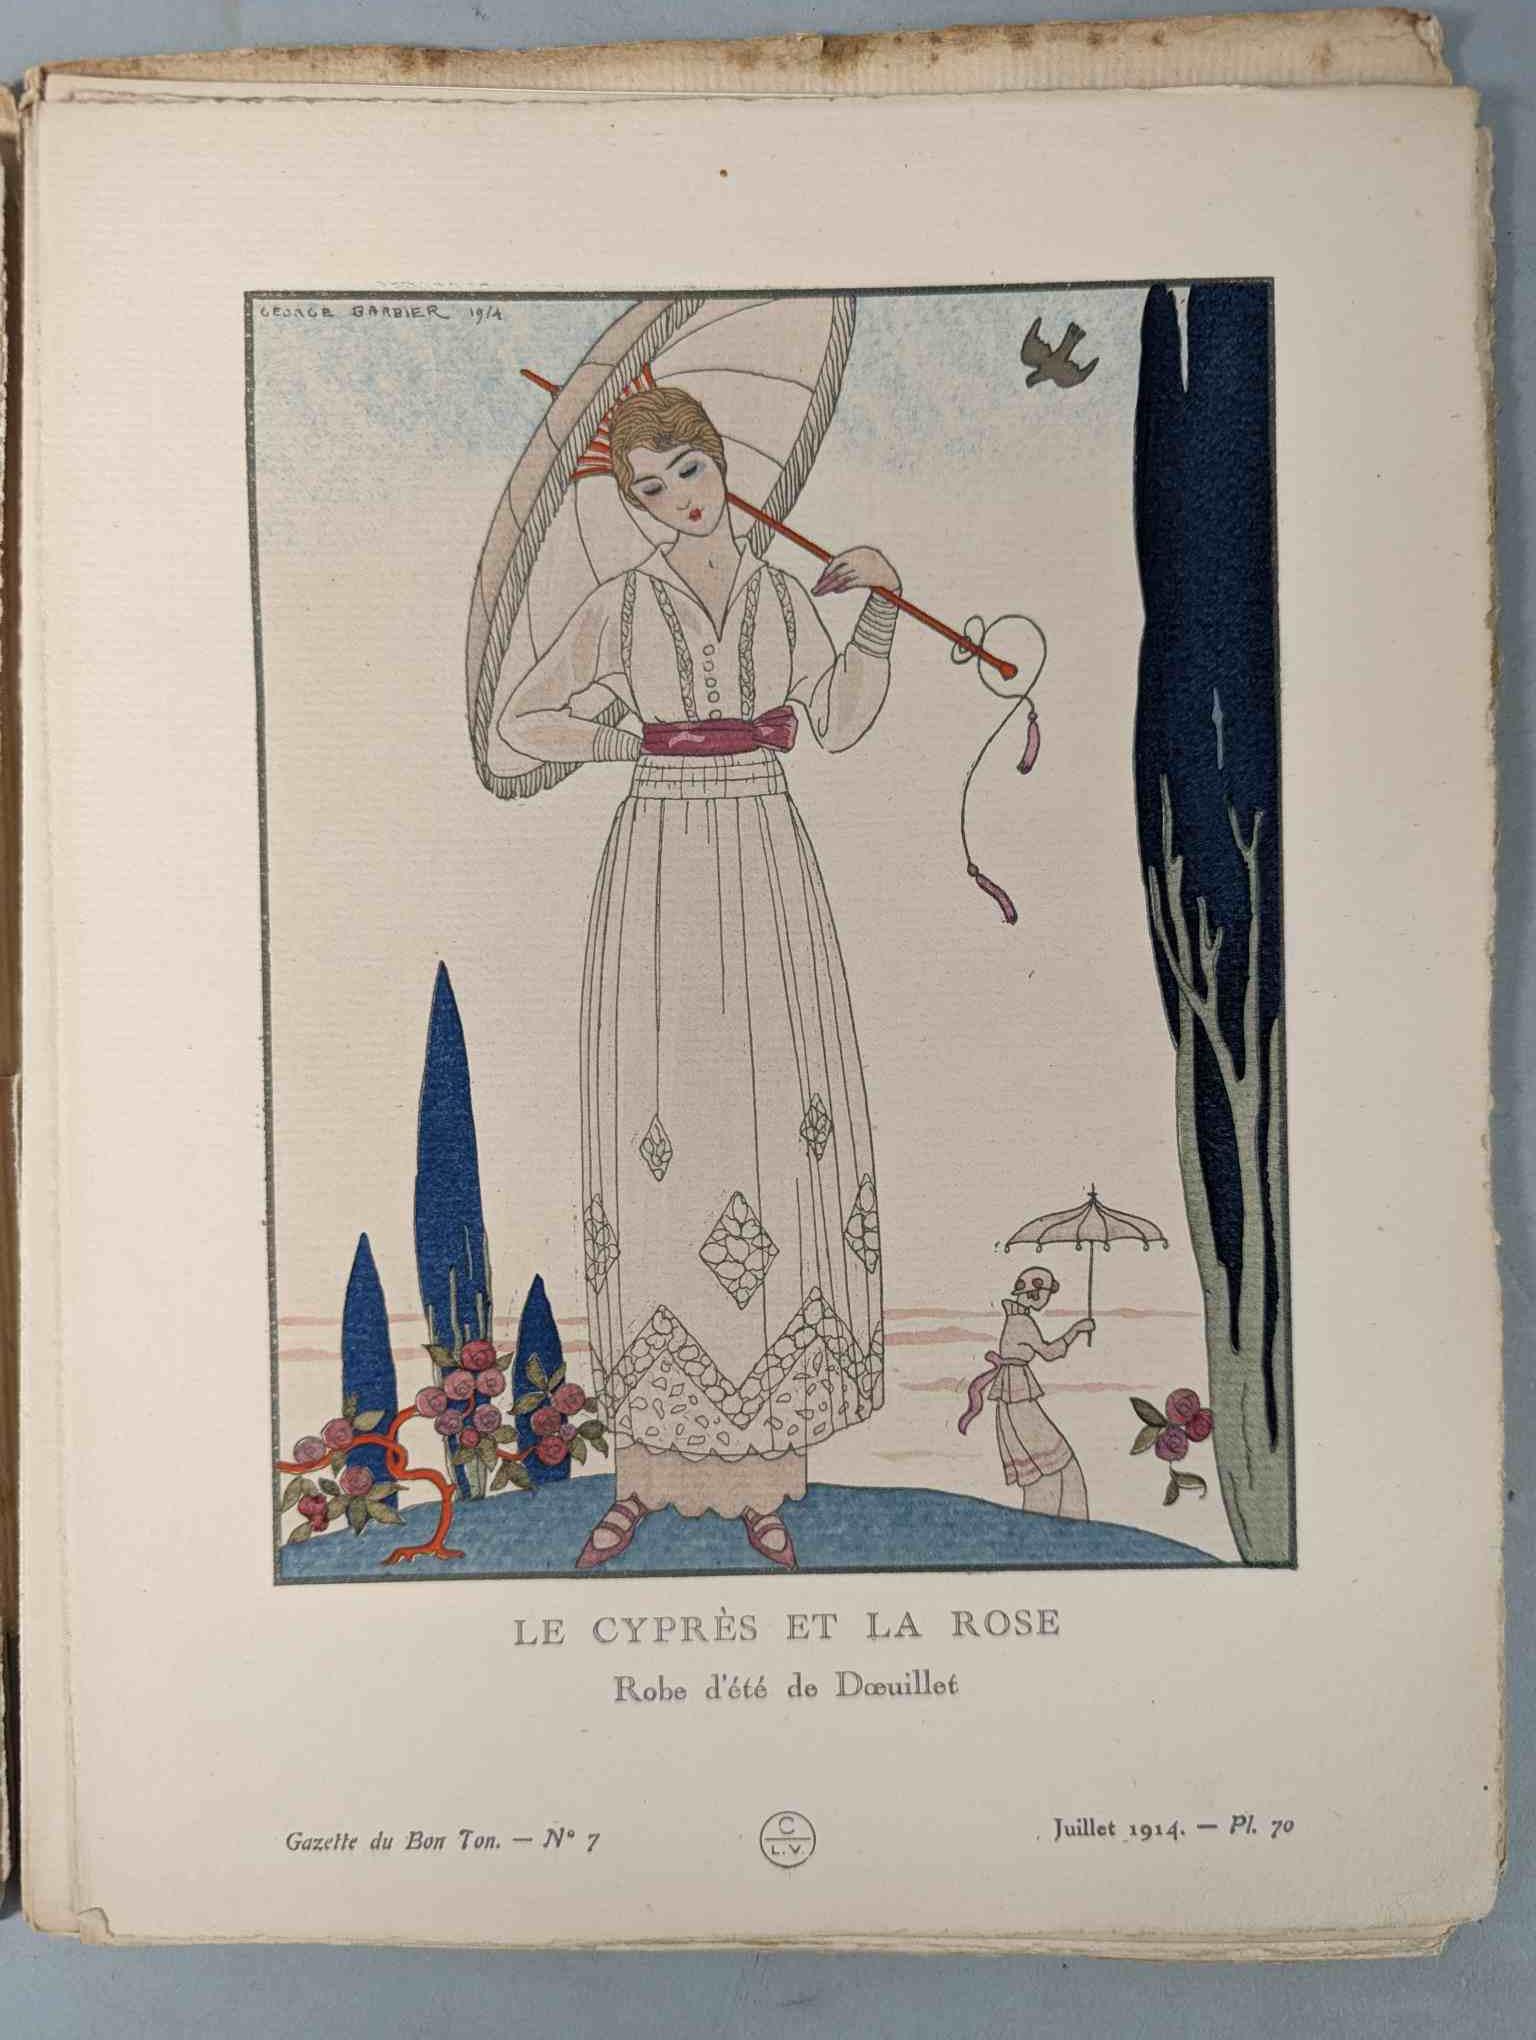 FASHION. VOGEL, Lucien. GAZETTE DU BON TON: Art-Modes & Frivolités, Paris 1913-14, 4 vol. - Image 46 of 54